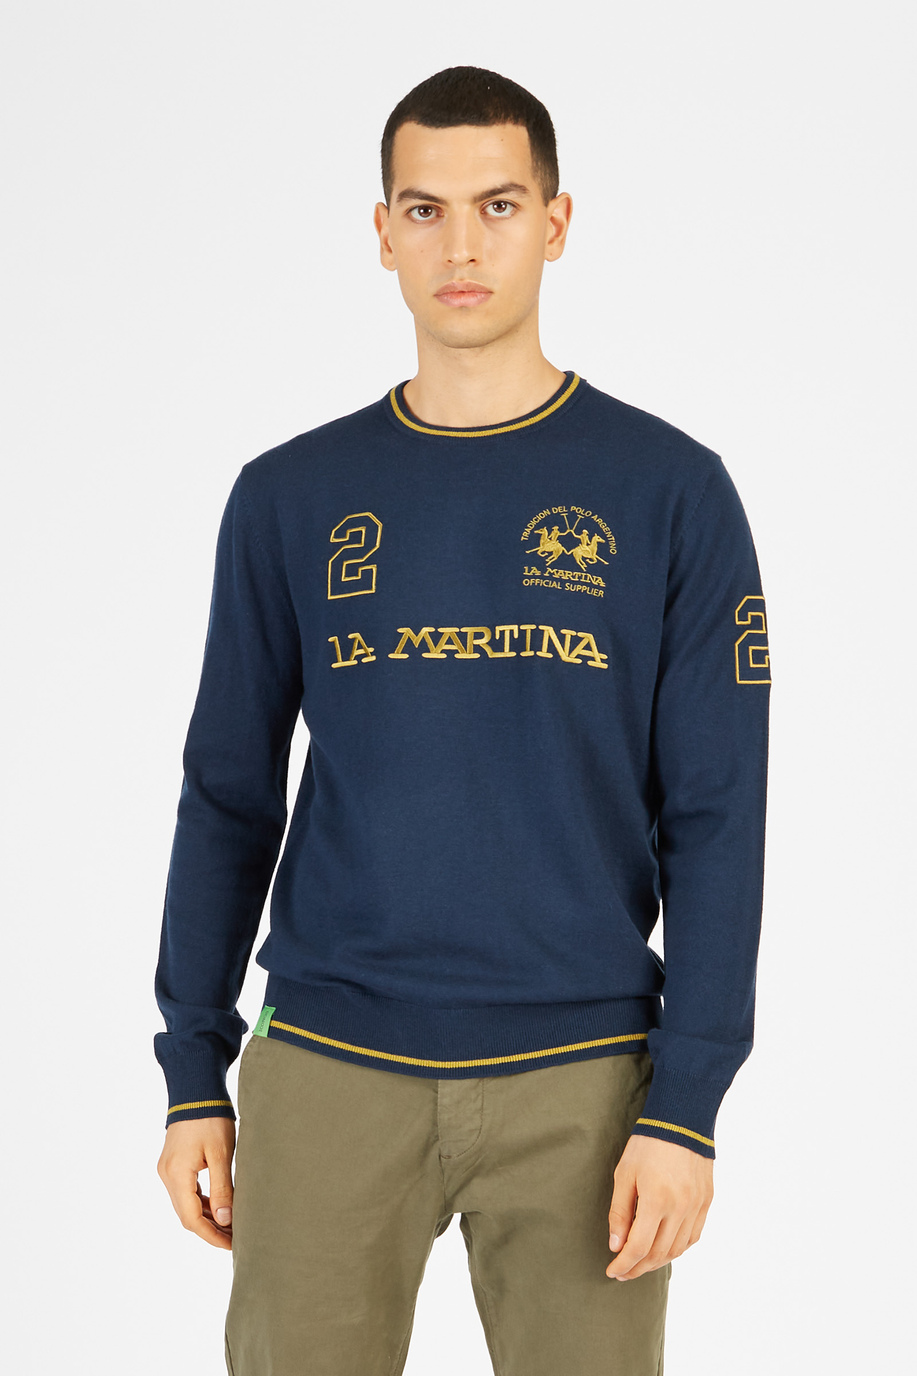 Maglia tricot da uomo in misto cotone girocollo regular fit - Maglie | La Martina - Official Online Shop